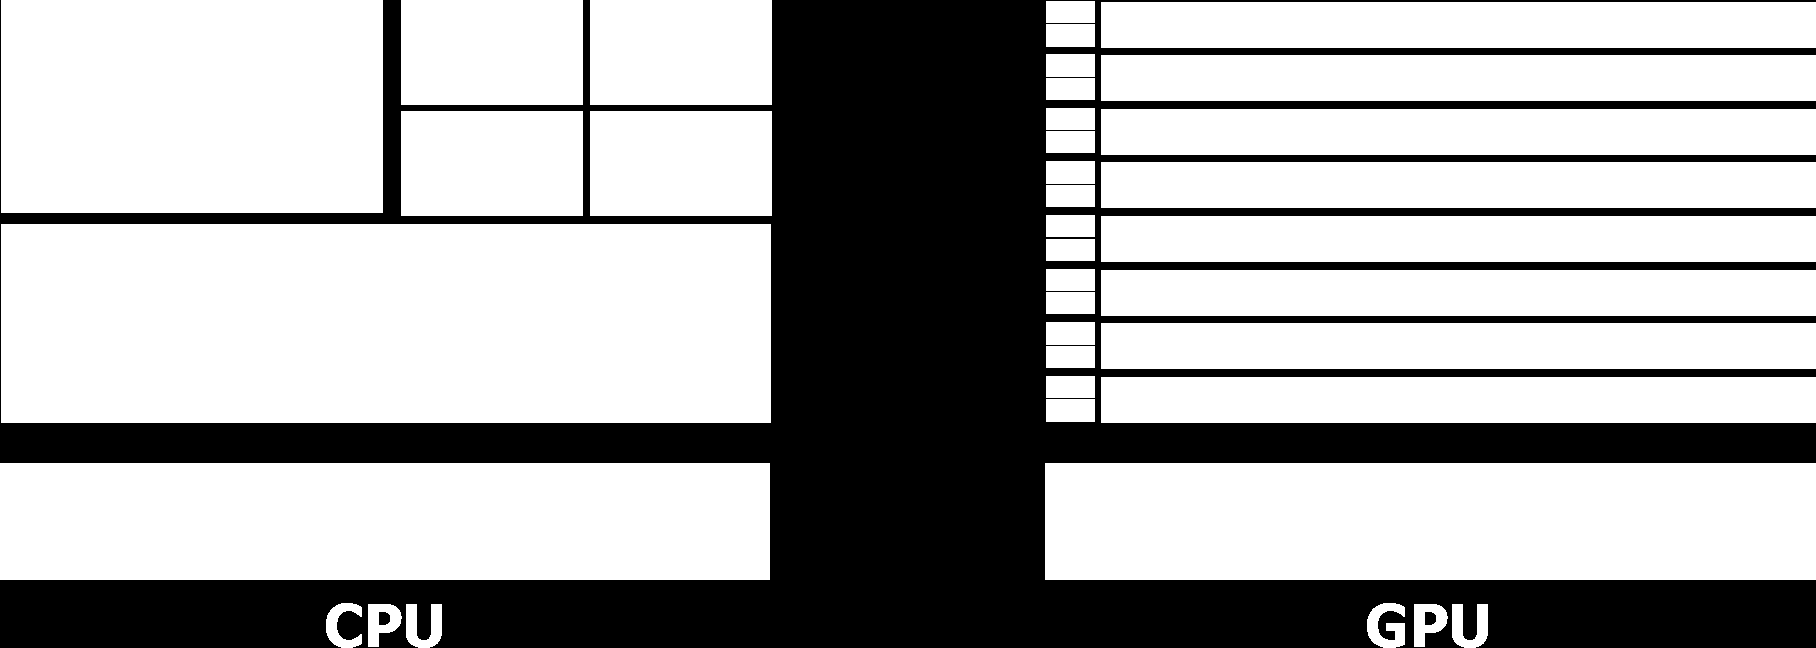 Abbildung 1: Vergleich Architektur CPU und GPU [NV11] eine CPU nur einen Kern. Die Leistung des Hauptprozessors wurde in erster Linie durch Takterhöhungen gesteigert.